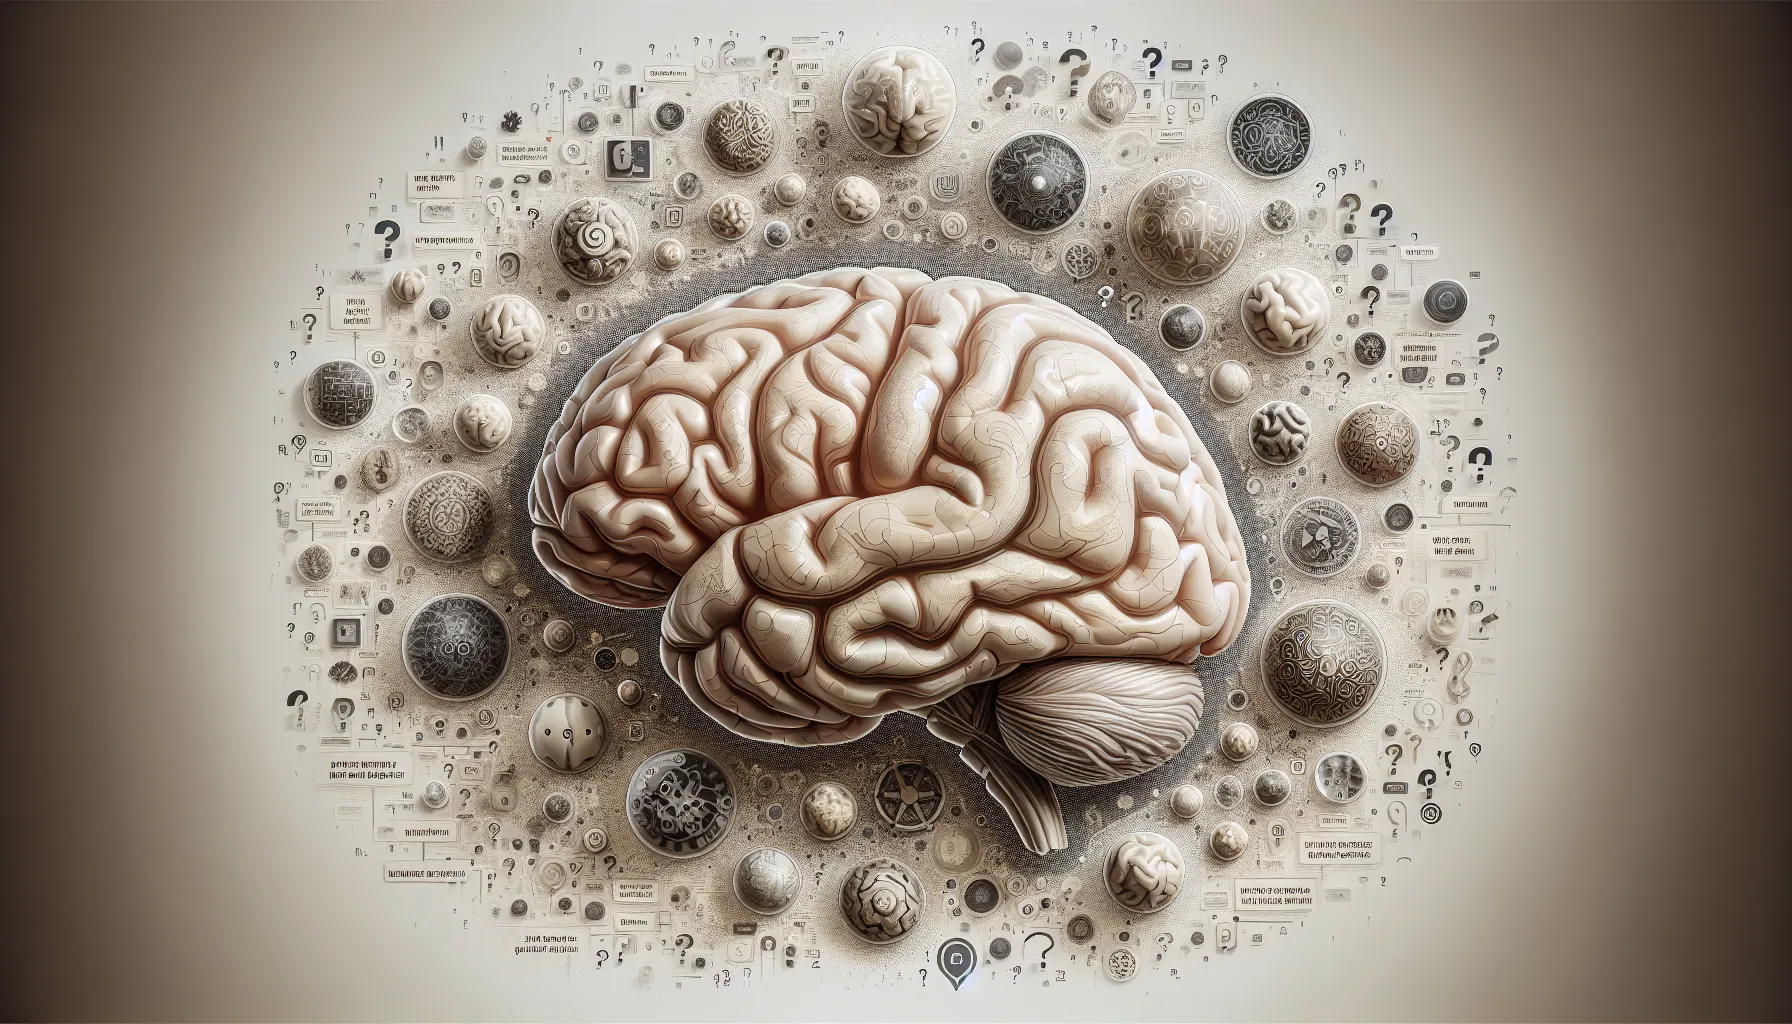 Una posible descripción alternativa para la imagen de tu artículo web sobre Cómo se define la naturaleza humana podría ser: Ilustración de un cerebro humano rodeado de diversas preguntas filosóficas y conceptos abstractos